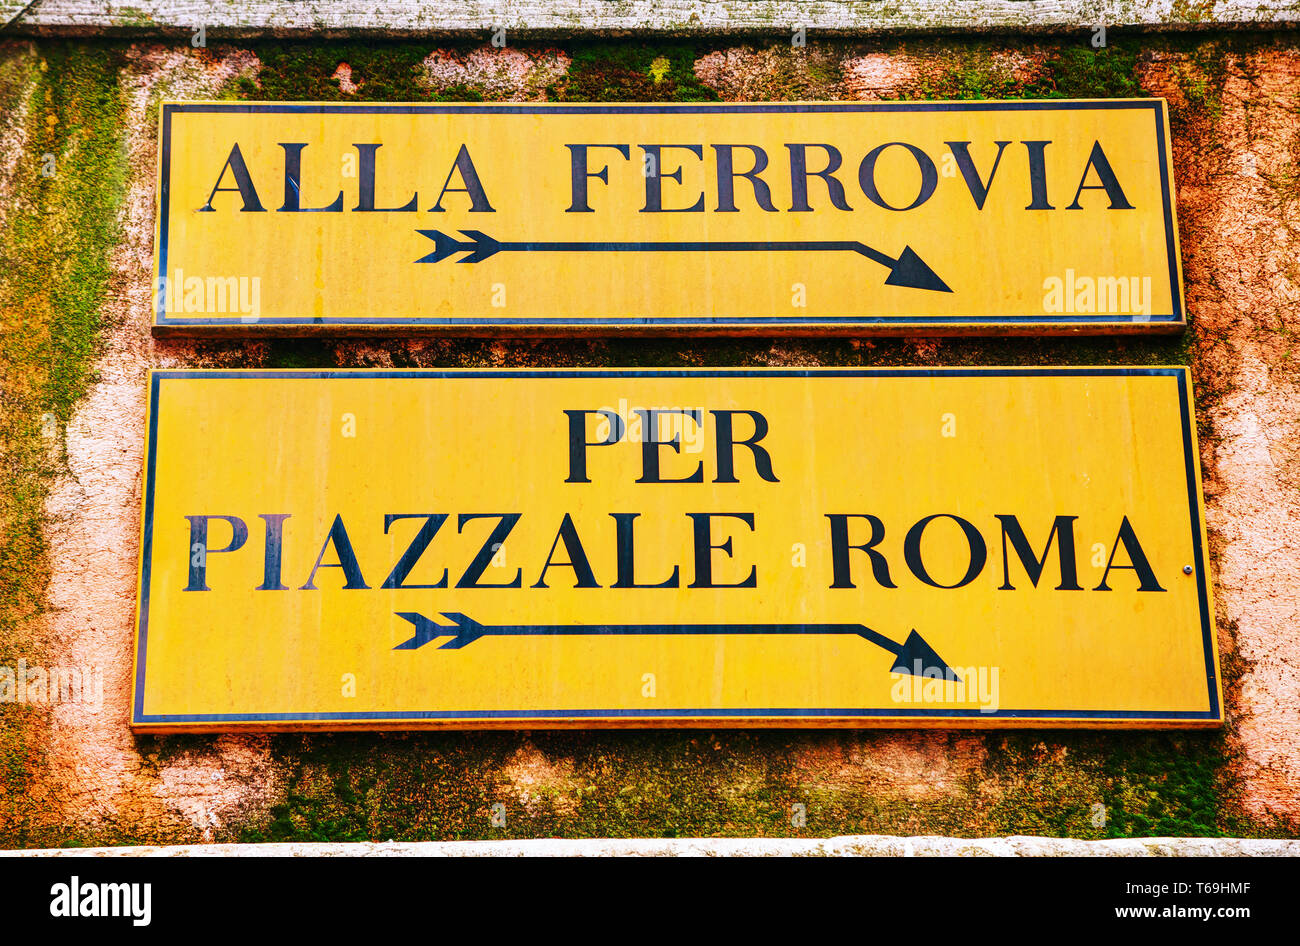 Alla Ferrovia and Piazzale Roma direction sign in Venice Stock Photo